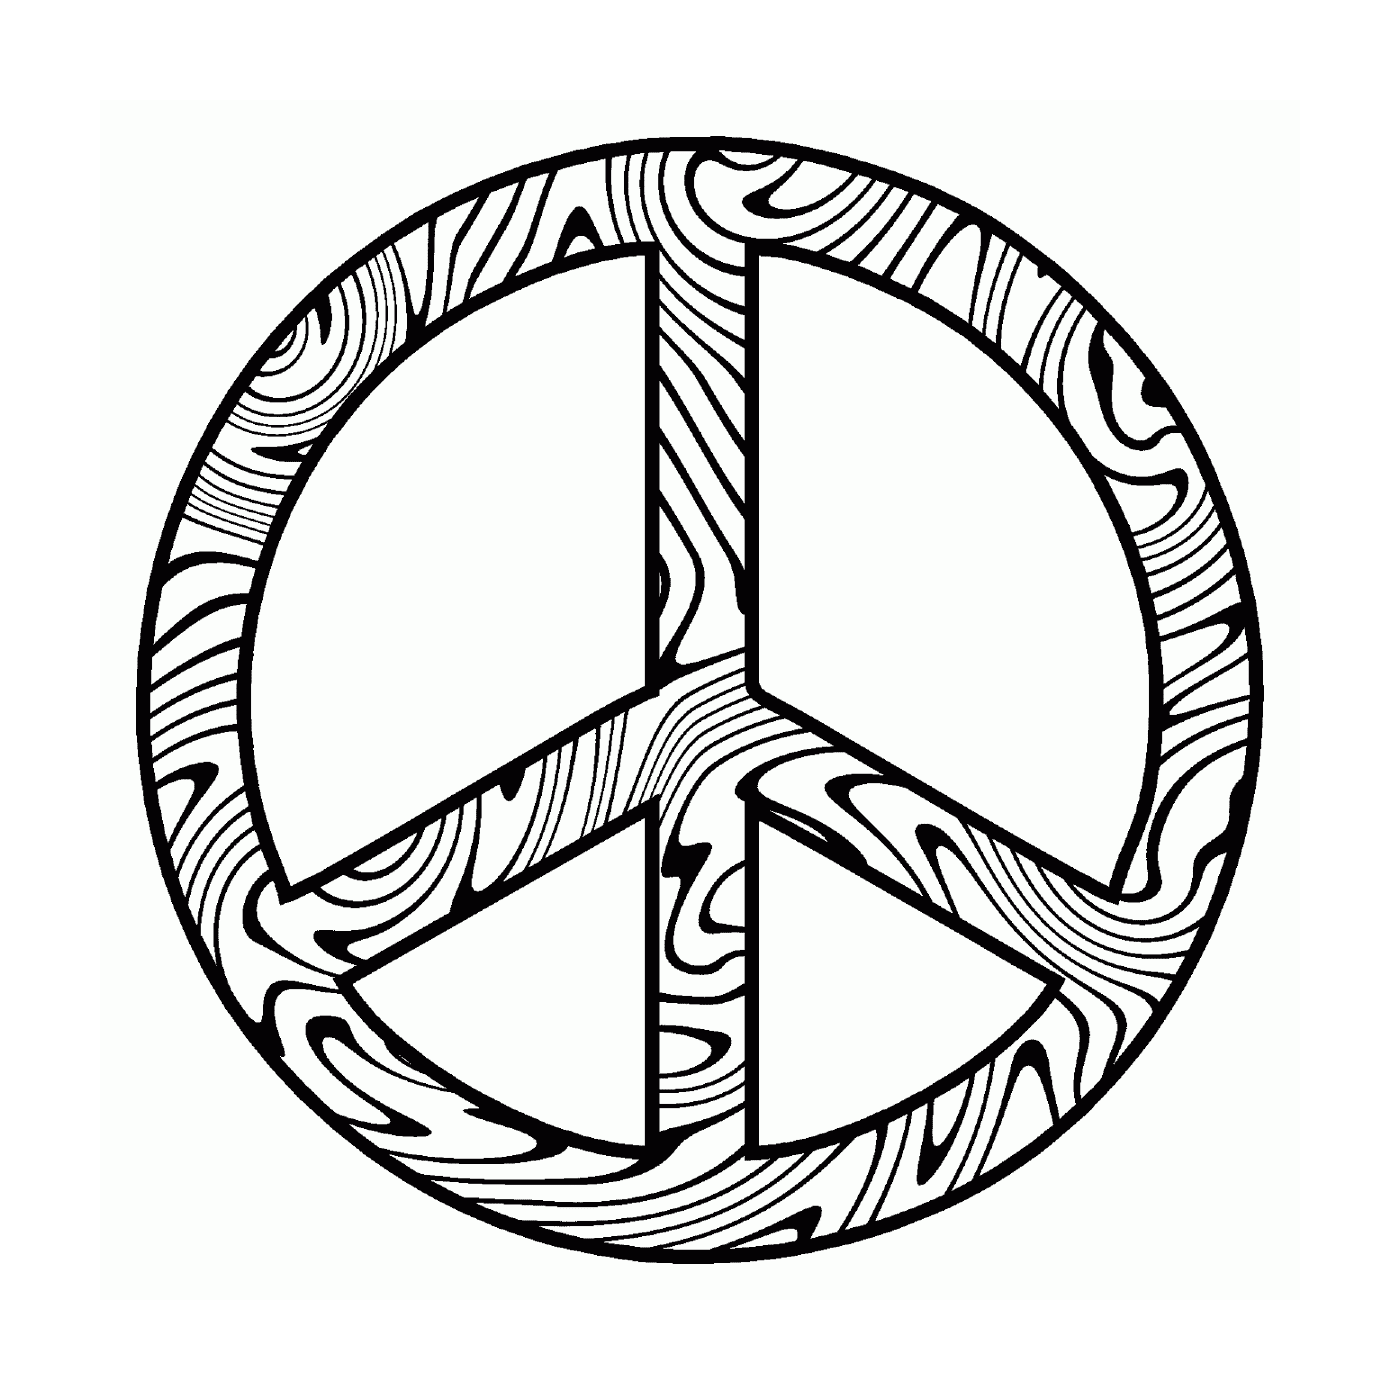  Simbolo astratto della pace 